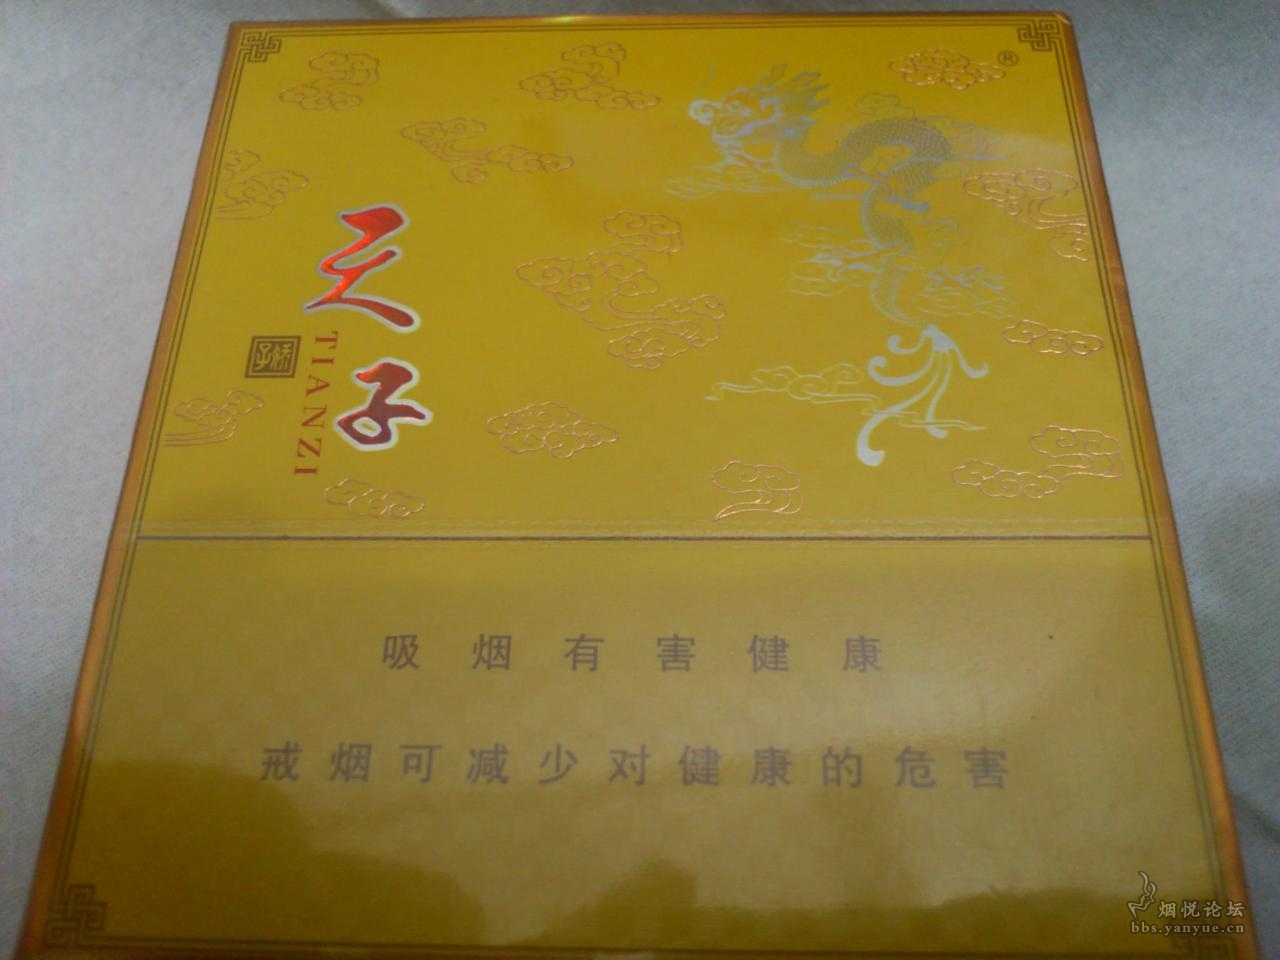 重庆天子传奇（16版条盒）_烟标/烟盒_图片欣赏_收藏价格_7788烟标收藏